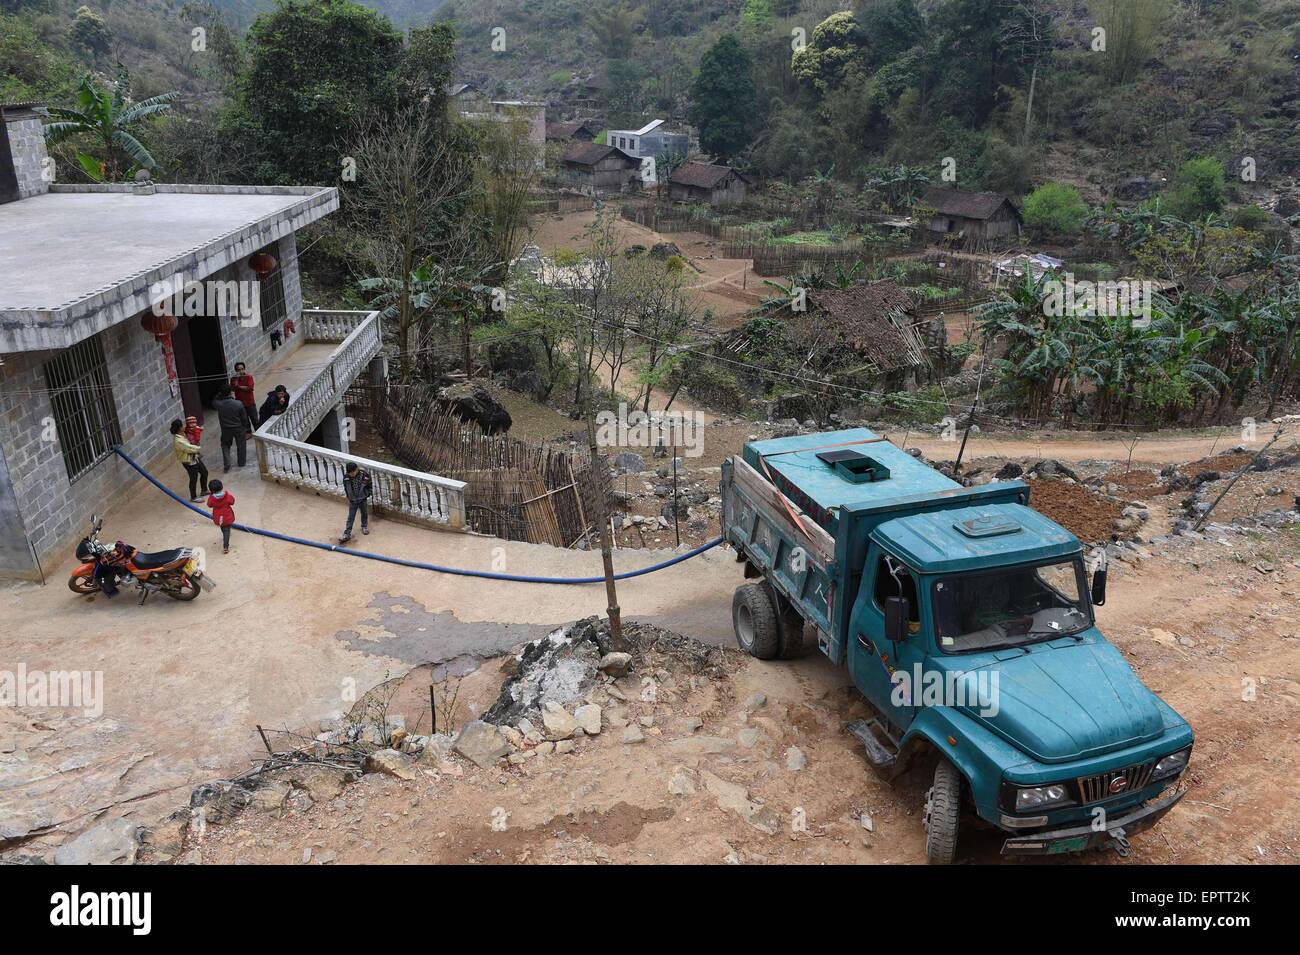 (150522) -- DAHUA, 22 maggio 2015 (Xinhua) -- Lan Shaofa trasporta un camion di acqua per la sua famiglia prima di andare fuori a lavorare a Nongyong villaggio di Bansheng township di Dahua Yao contea autonoma, a sud-ovest della Cina di Guangxi Zhuang Regione autonoma, Marzo 2, 2015. Situato al centro del Carso landforms a ovest di Guangxi, Bansheng Township soffre di un grave deficit di acqua per età. Pertanto pioggia è una benedizione per le persone che vivono su questa terra per circa mille anni che sono principalmente di Yao gruppo etnico. Per soddisfare la loro vita quotidiana ha bisogno la popolazione locale sempre la raccolta delle acque piovane con Foto Stock